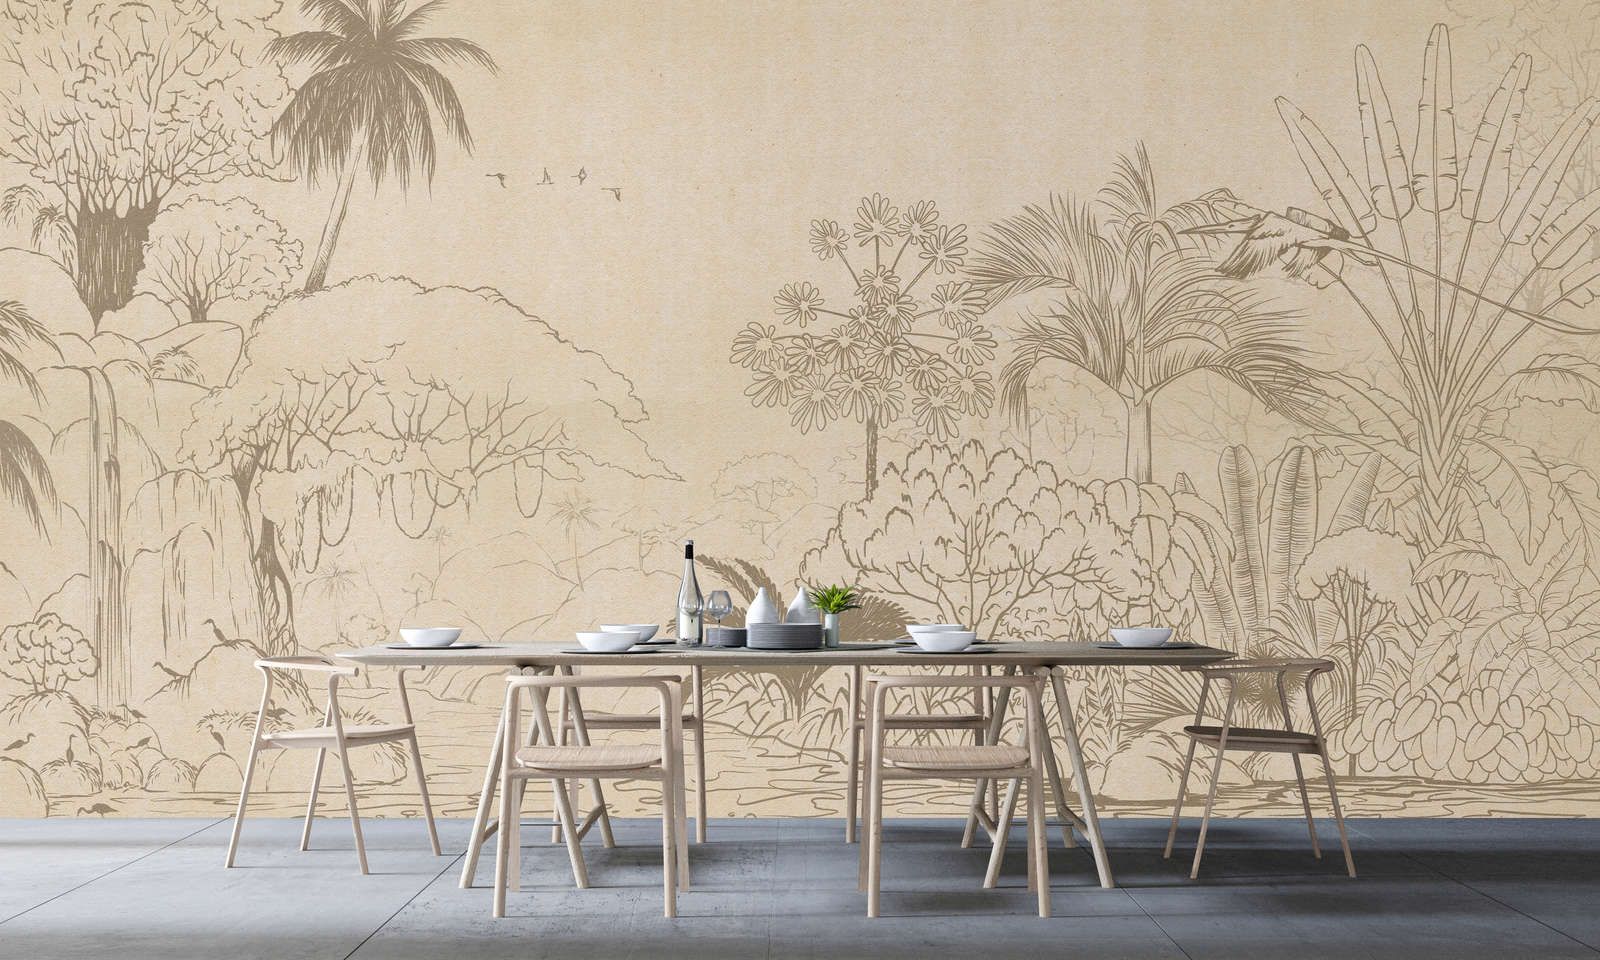             Papel pintado »oasis« - Selva en estilo dibujo con aspecto de papel hecho a mano - Material sin tejer de textura ligera
        